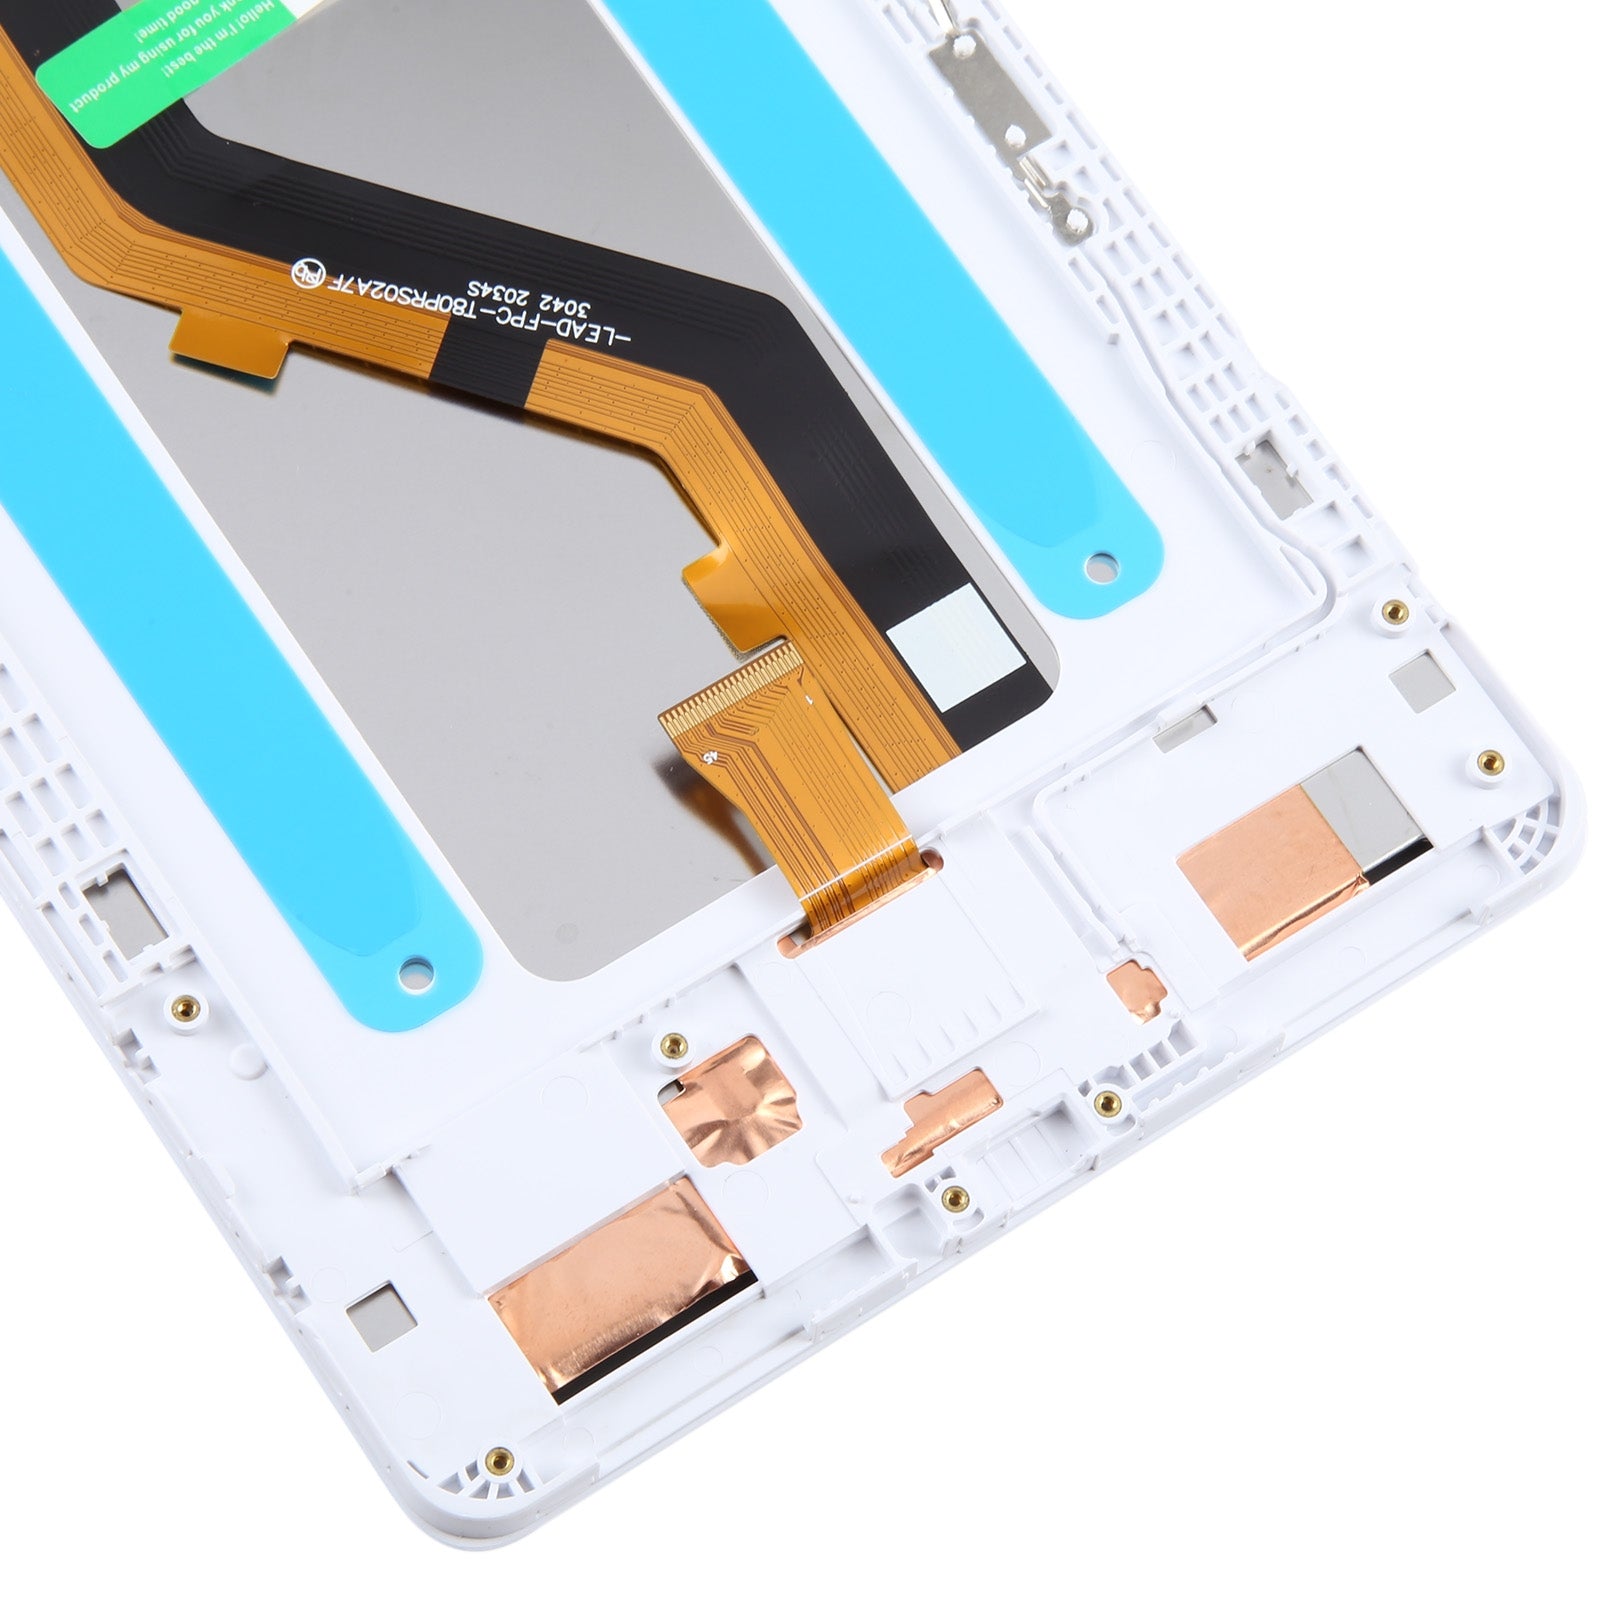 Ecran Plein + Tactile + Châssis Samsung Galaxy Tab A 8.0 2019 T290 WiFi Edition Blanc